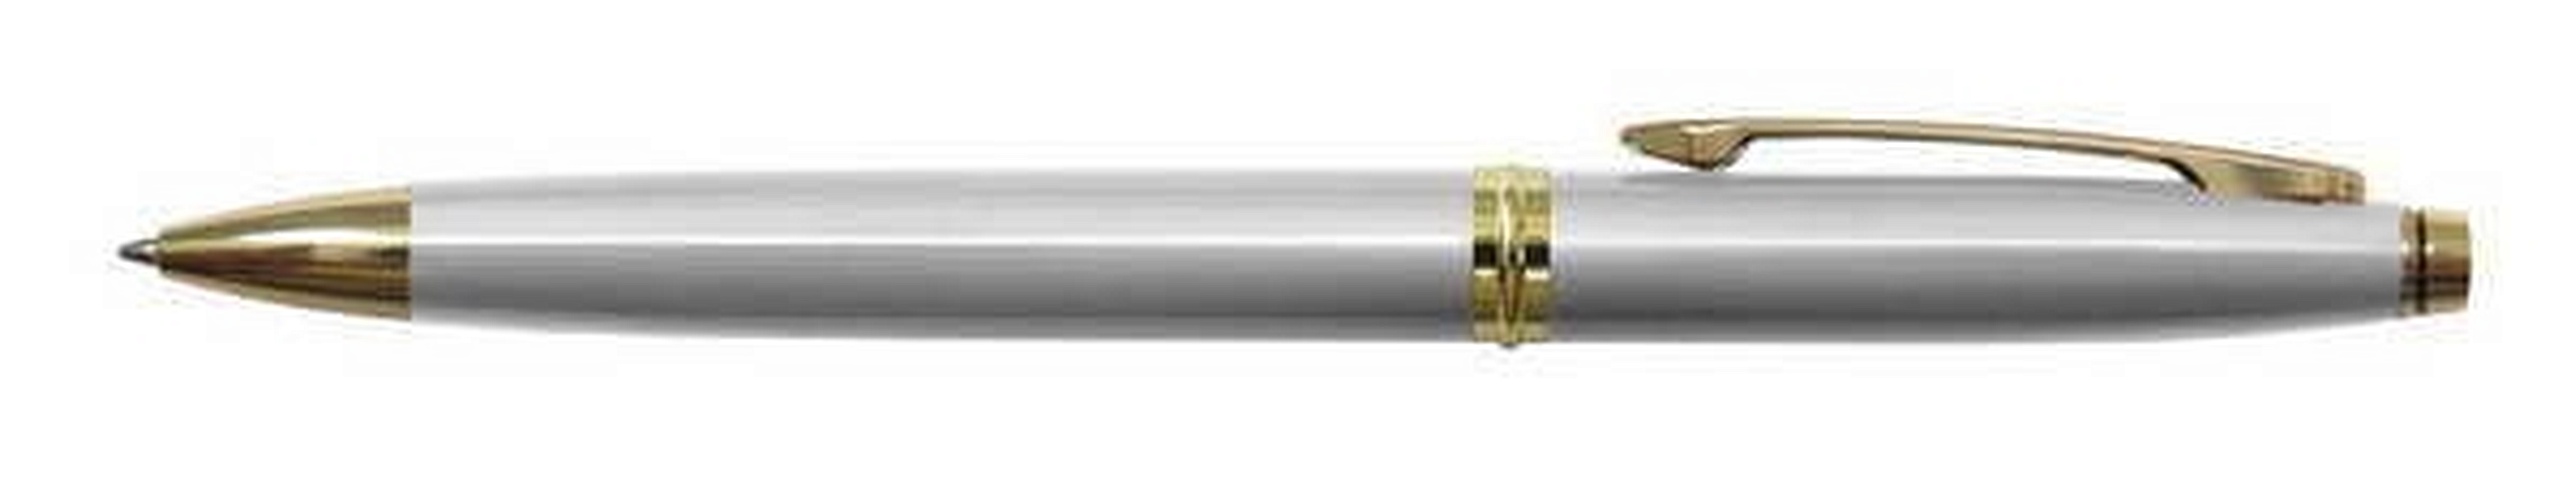 Ручка шариковая автоматическая синяя Silver Luxe 0,7мм, корпус металл.серебр, BERLINGO mss victor hugo mb полностью серебряный ролик шариковая ручка классический архитектурный стиль номер 5816 8600